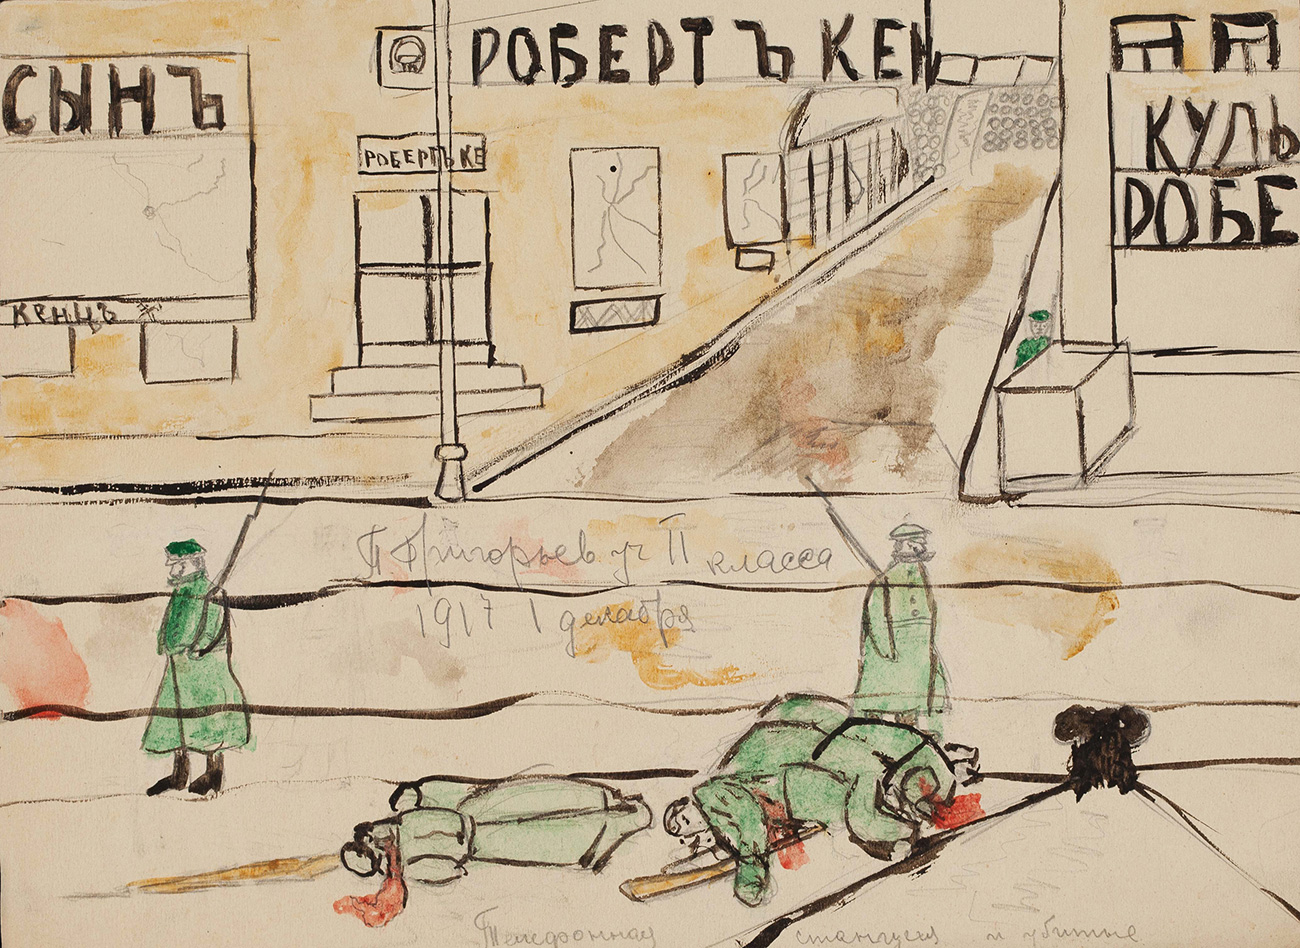 En el centenario de la revolución, el museo ha organizado una exposición titulada “La gran revolución rusa pintada por niños”, que se podrá visitar hasta el 19 de junio. // “Puesto de teléfonos y gente muerta”, Moscú, diciembre de 1917.